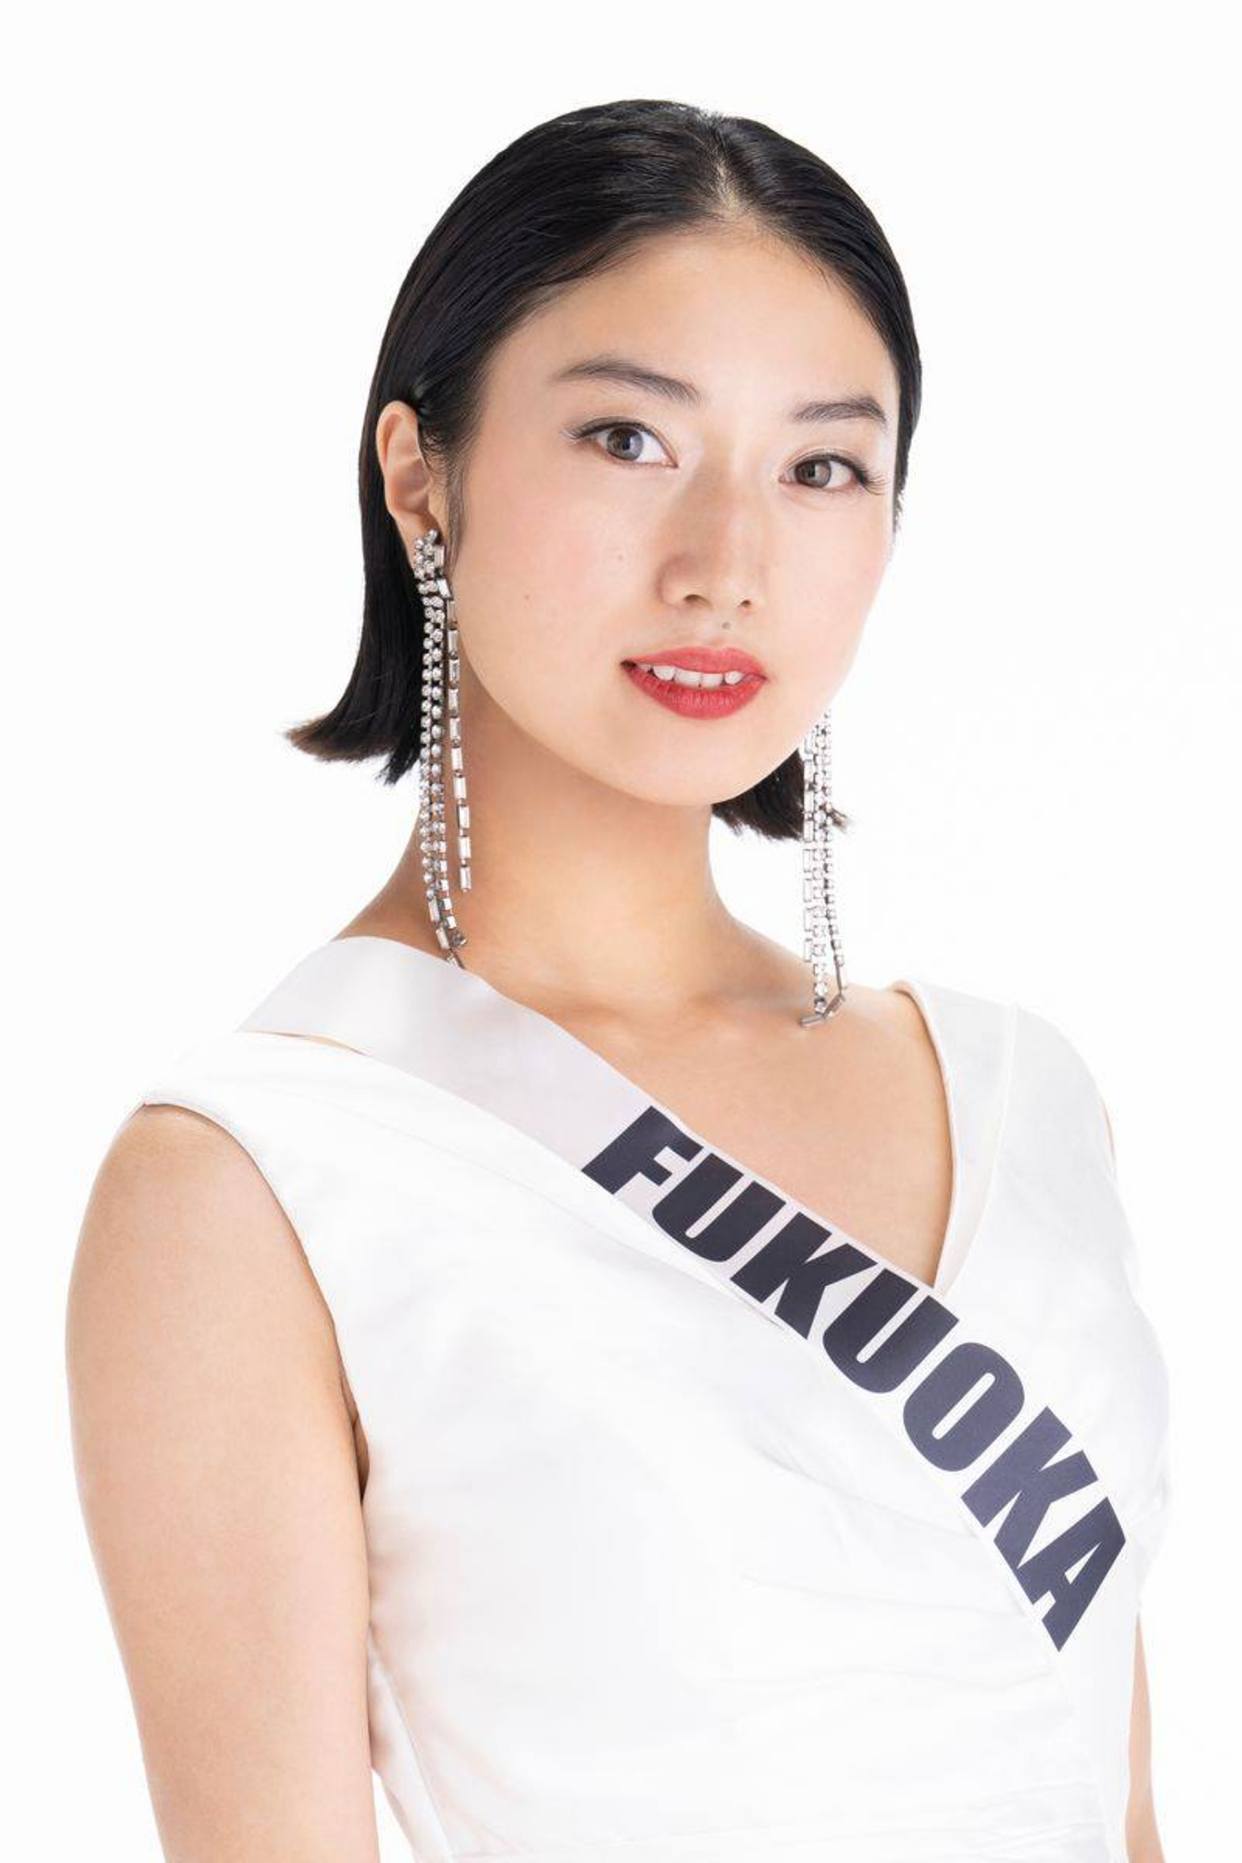 2020日本小姐选美比赛35县派女生参赛网赞冠军艳压全场